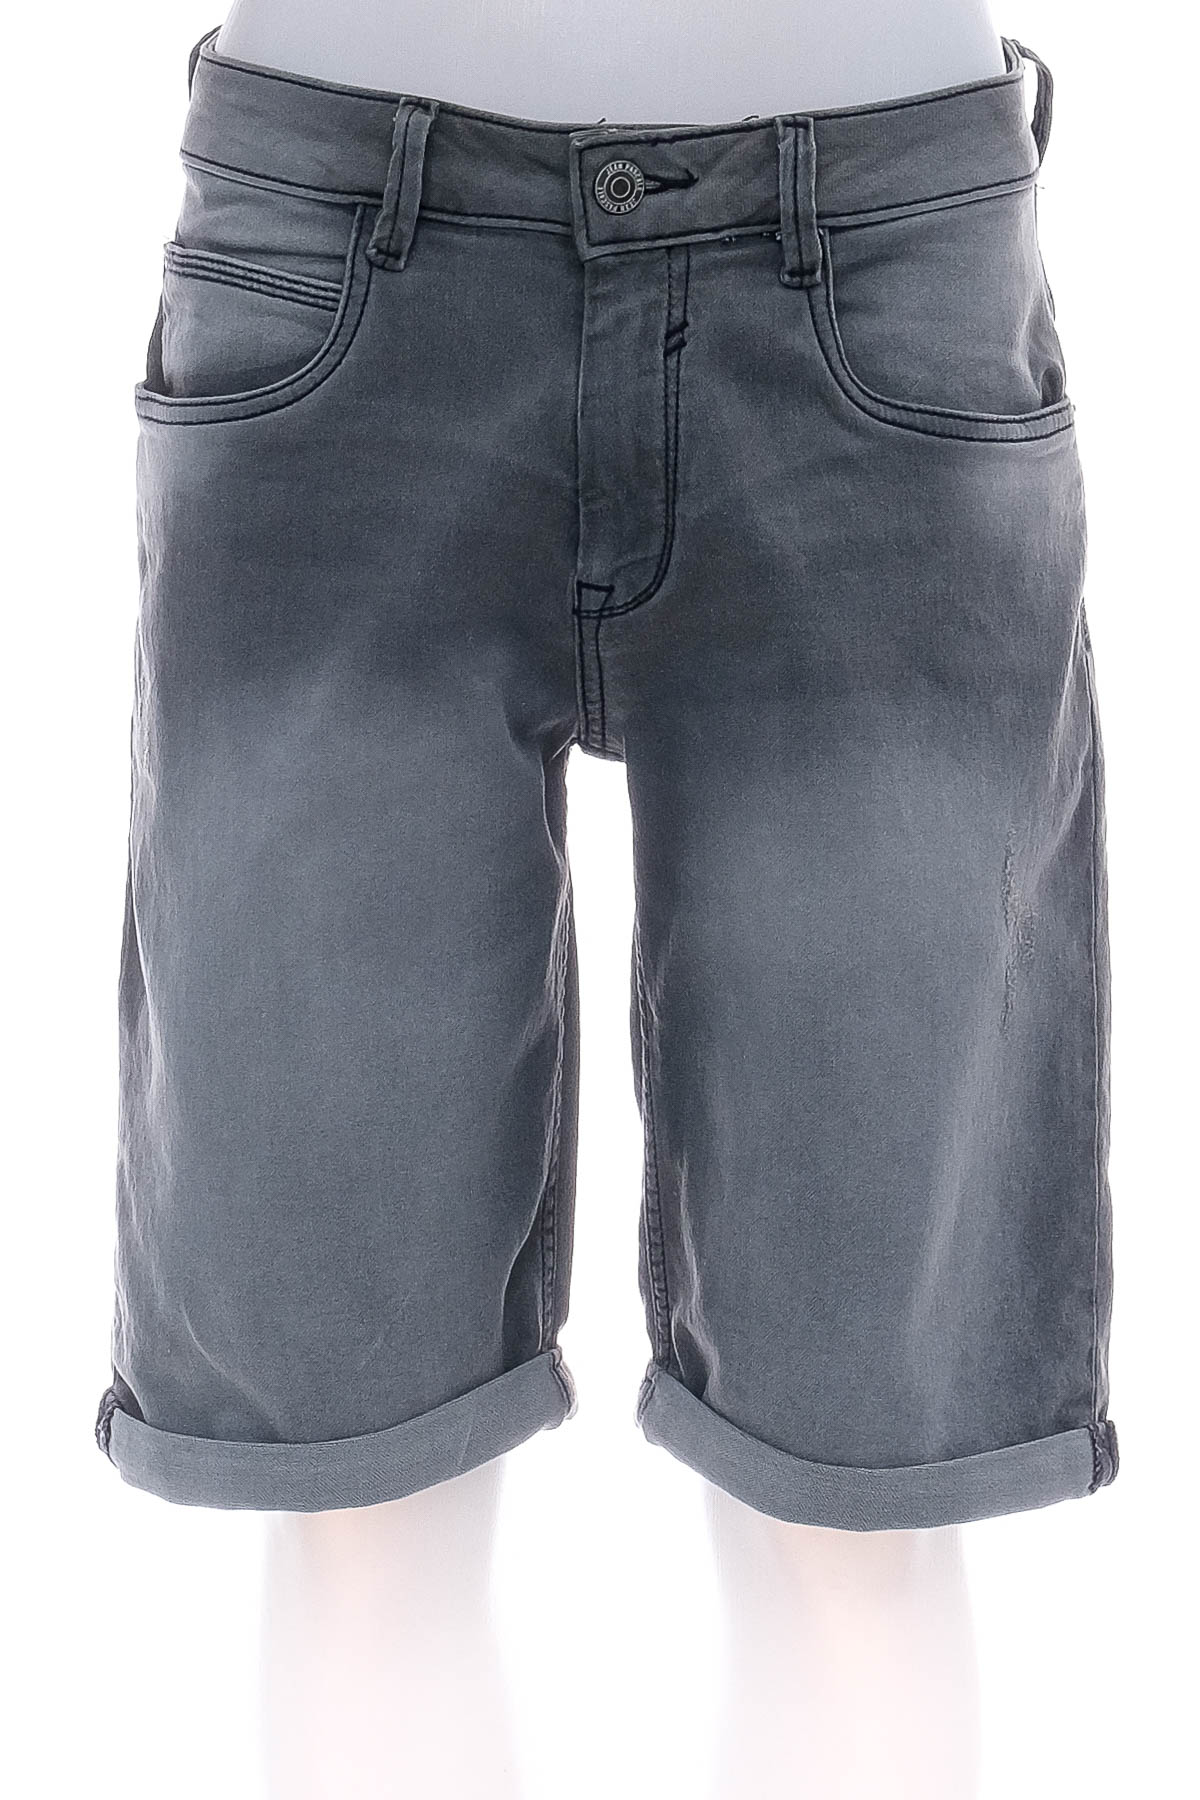 Men's shorts - Jean Pascale - 0